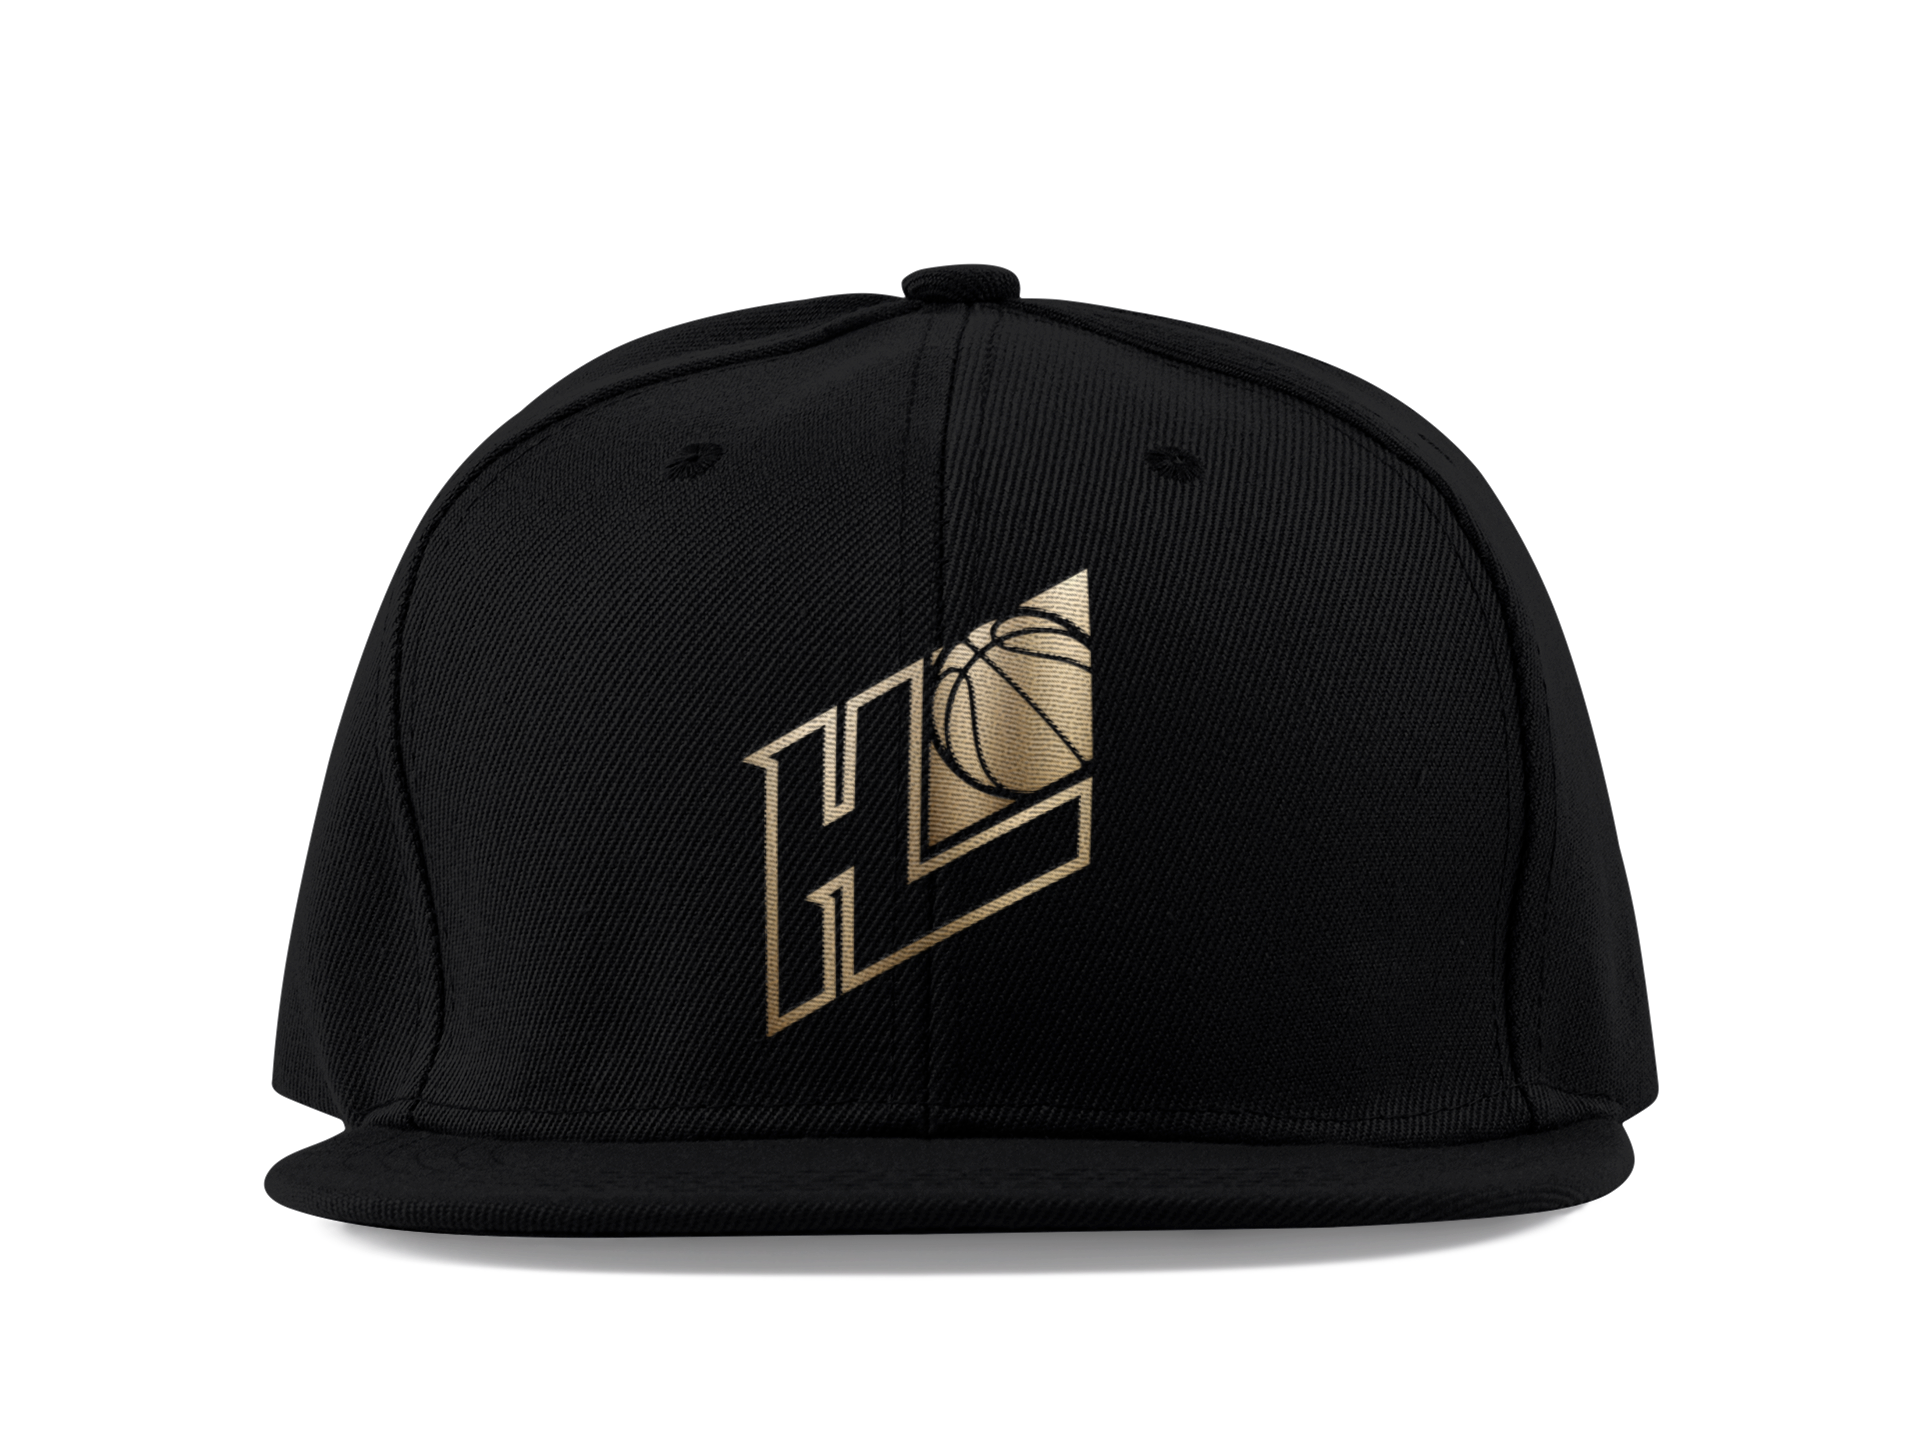 Hoop League Leather Brim Snapback Cap Black/Gold - Hoop League